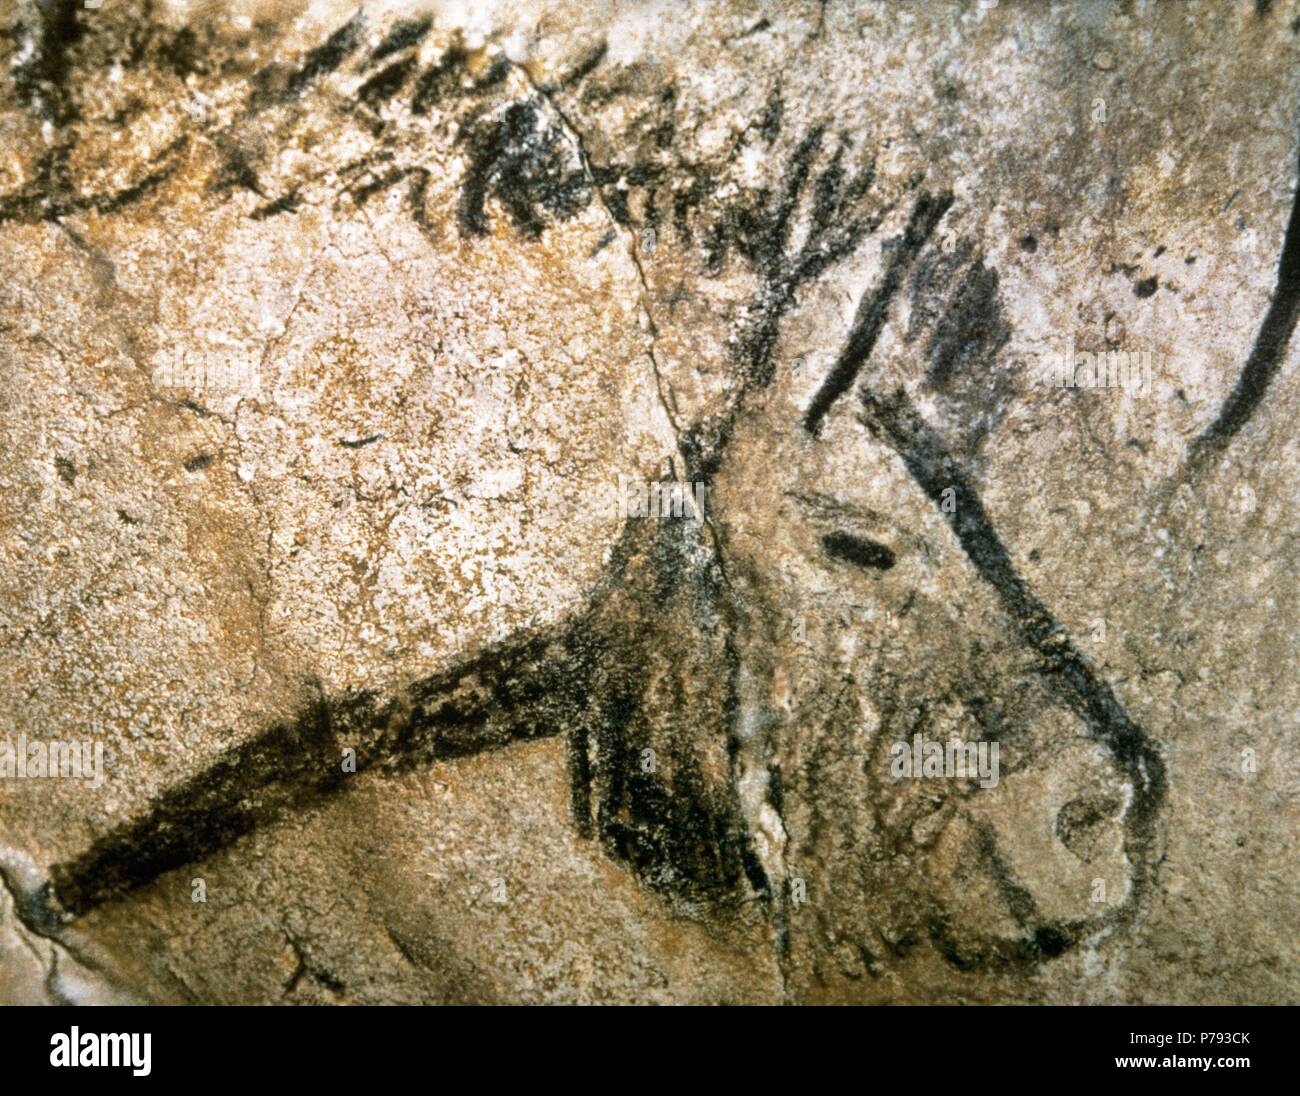 Grotta di Niaux. La pittura di epoca preistorica. Periodo di Magdalenian. Il Paleolitico superiore. Testa di cavallo. La Francia. Foto Stock